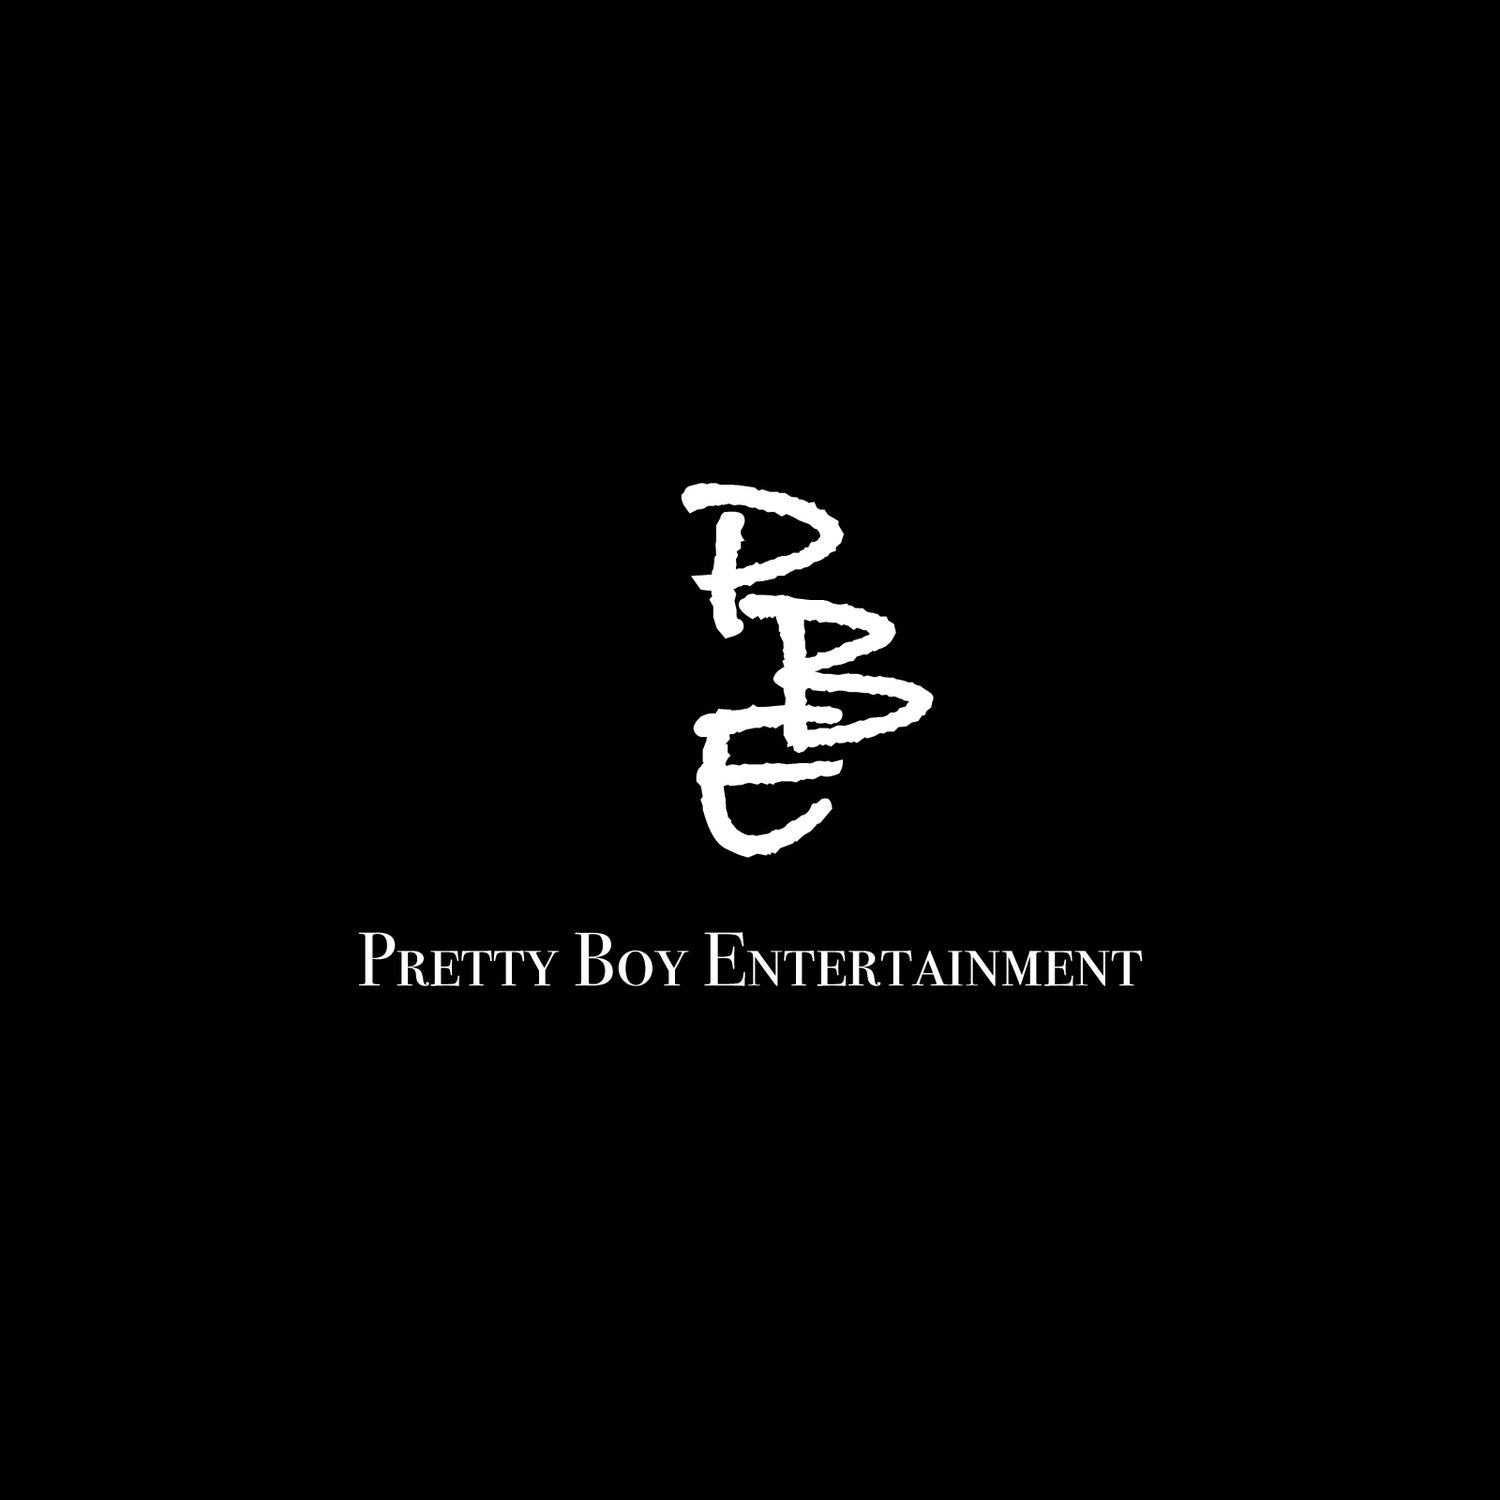 Pretty Boy Entertainment